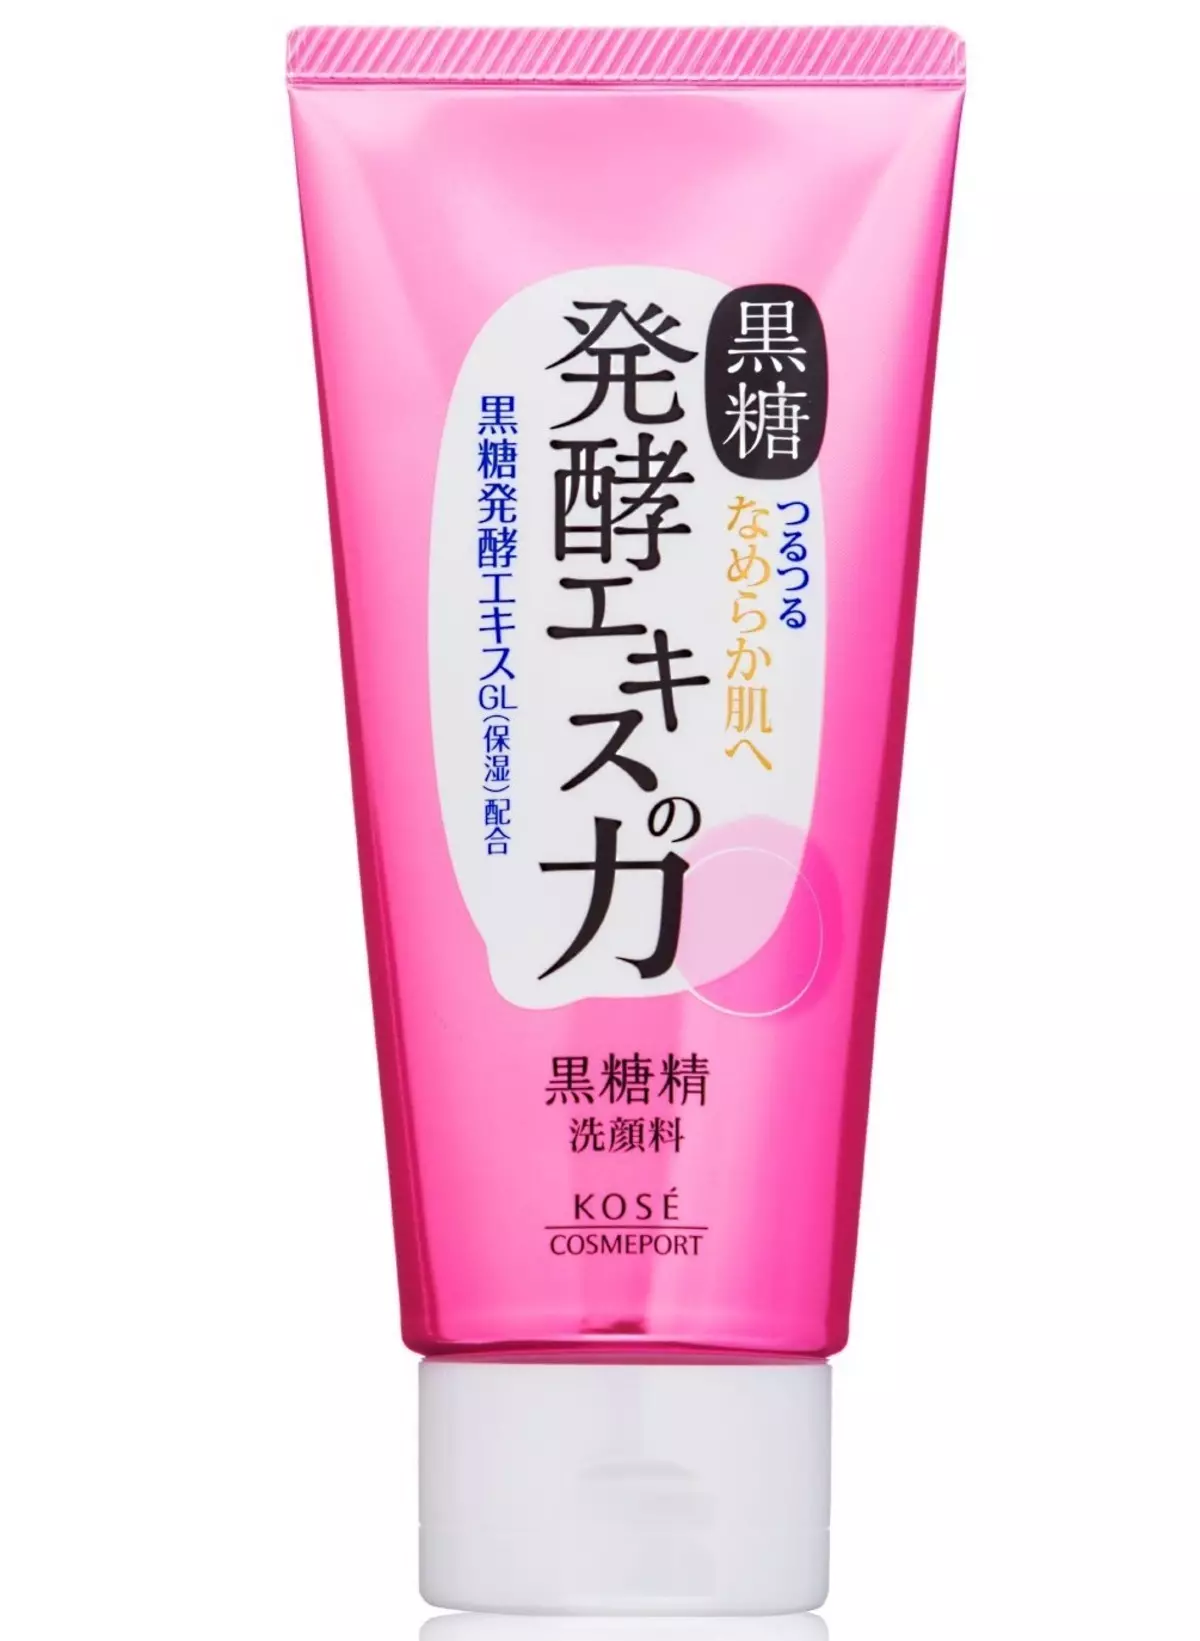 MaJapan Cosmetics: Yakanyanya cosmetics mabhuru kubva kuJapan. Rosette, kose uye imwe nyanzvi yezvinyorwa. Ongororo yeCosmetologists 4498_37